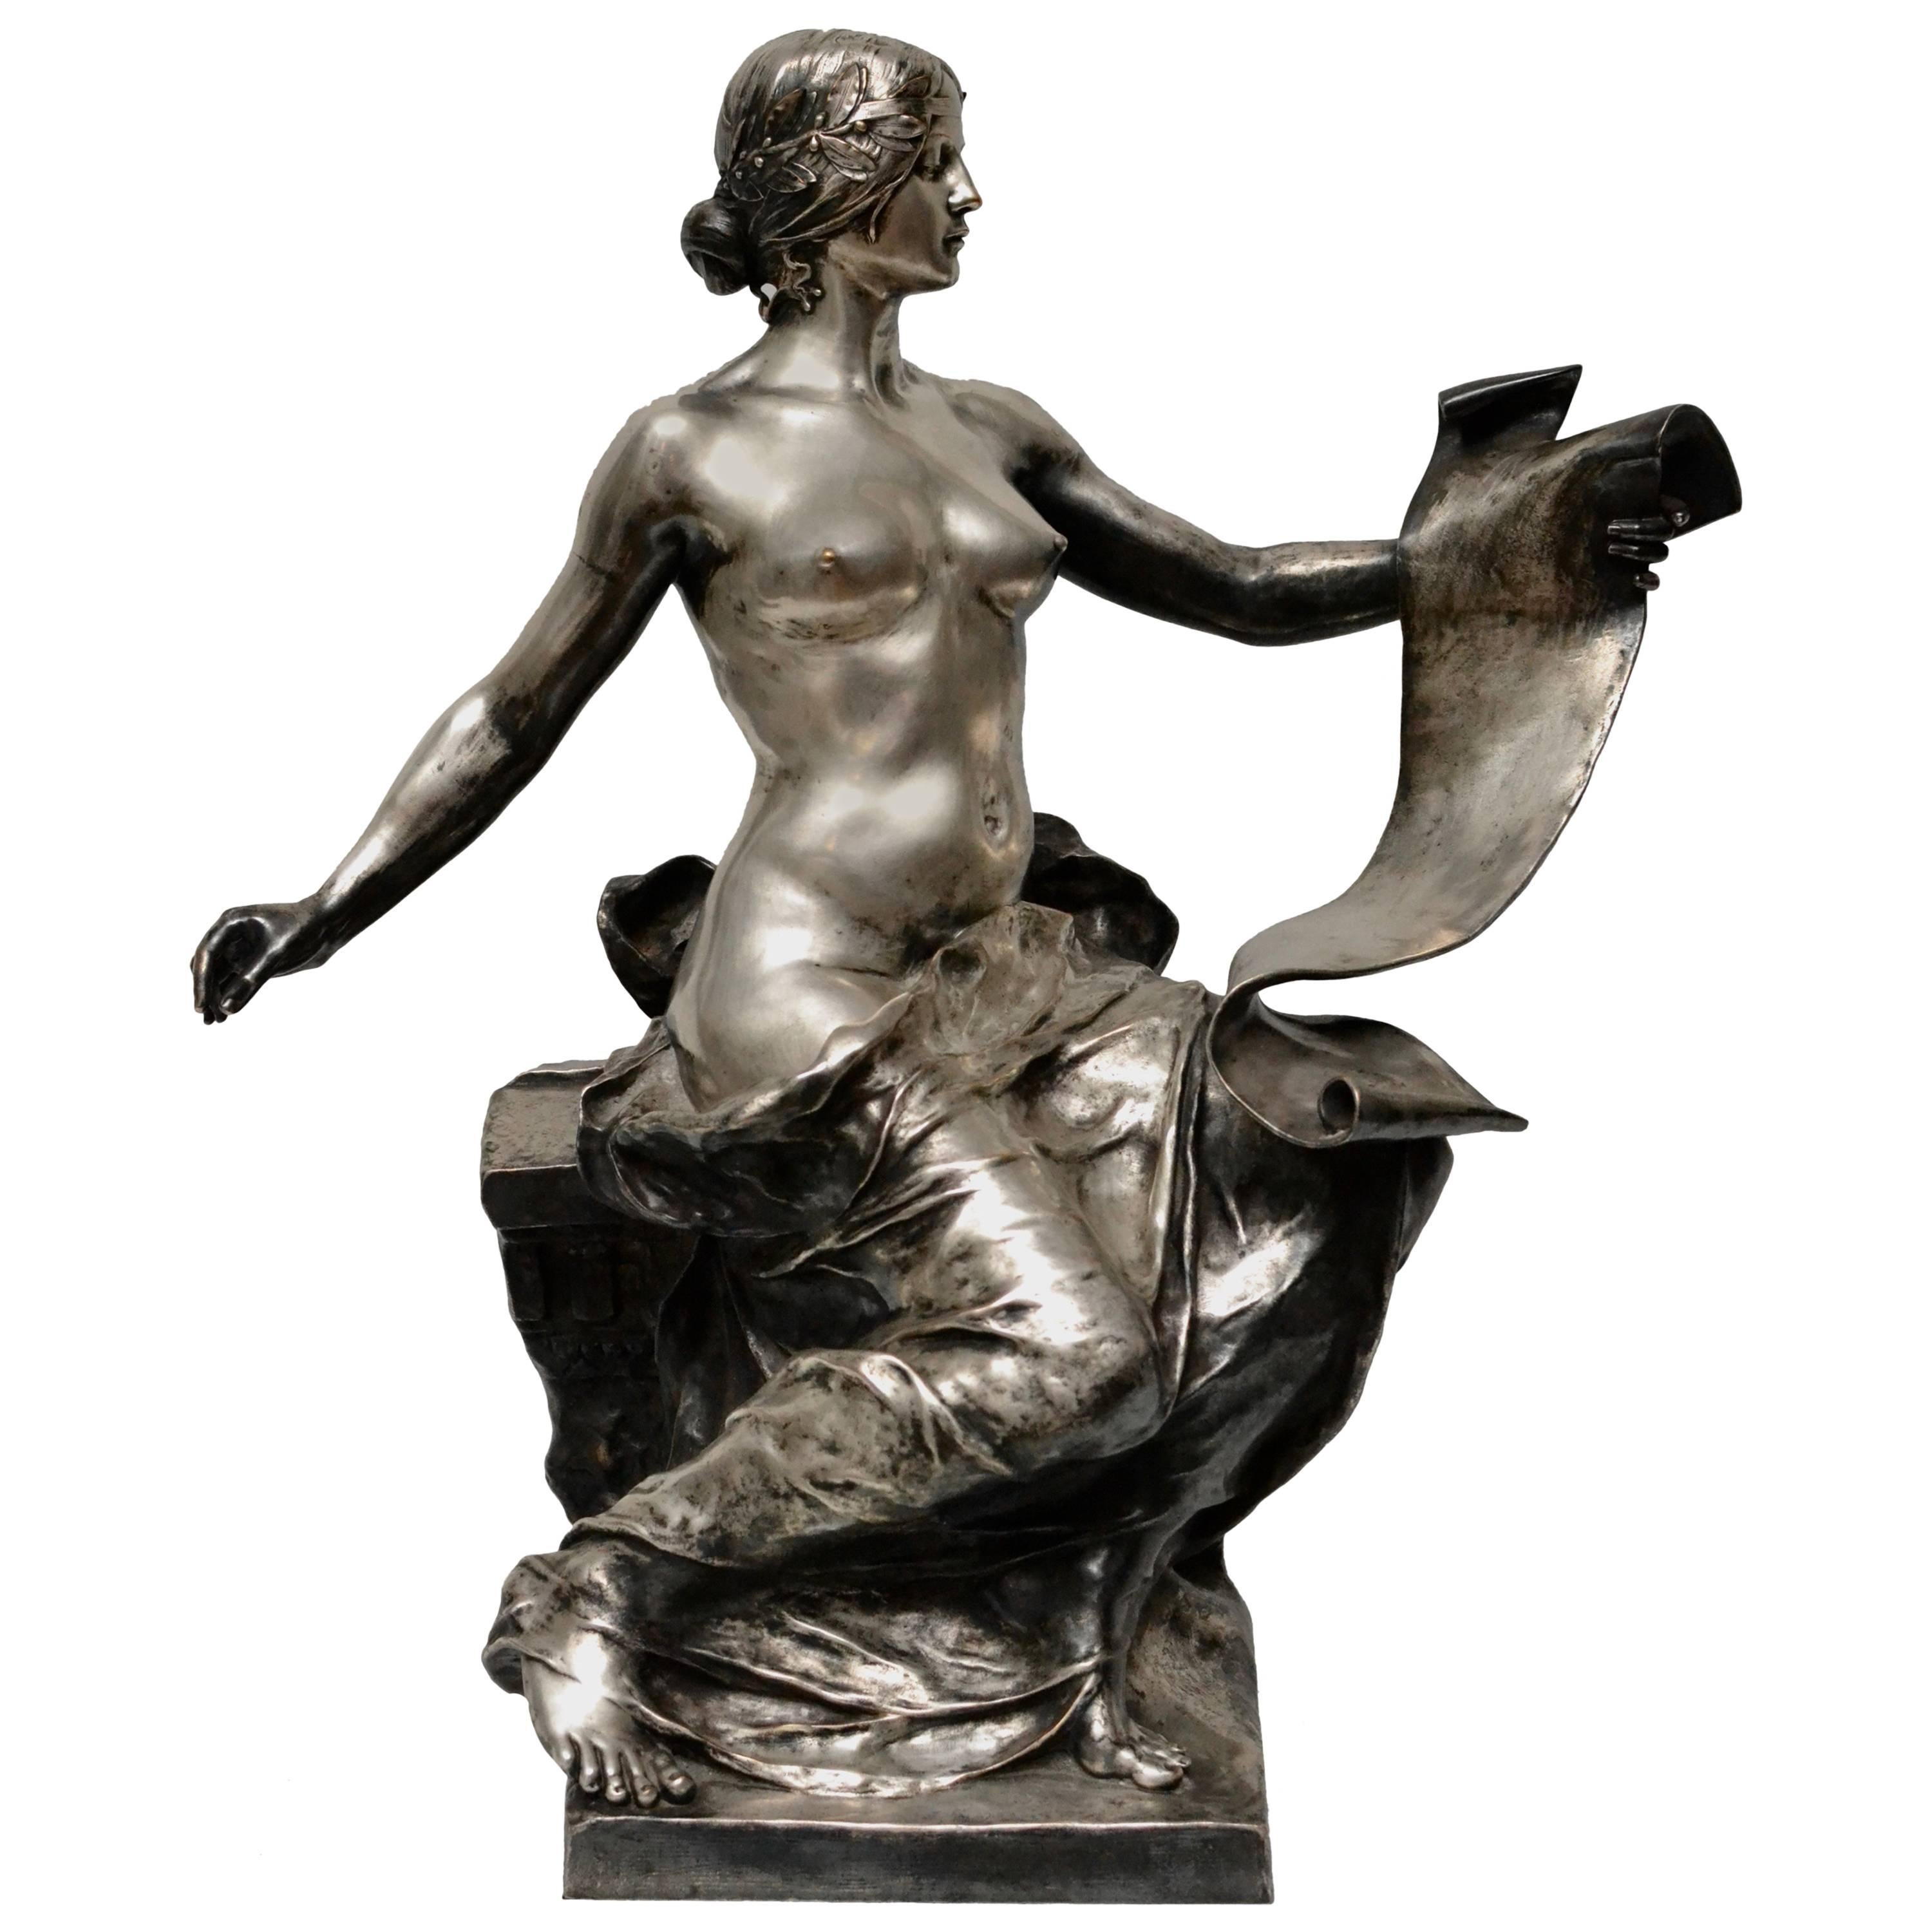 Silvered Bronze Sculpture, "La Poesie" by Georges Bareau